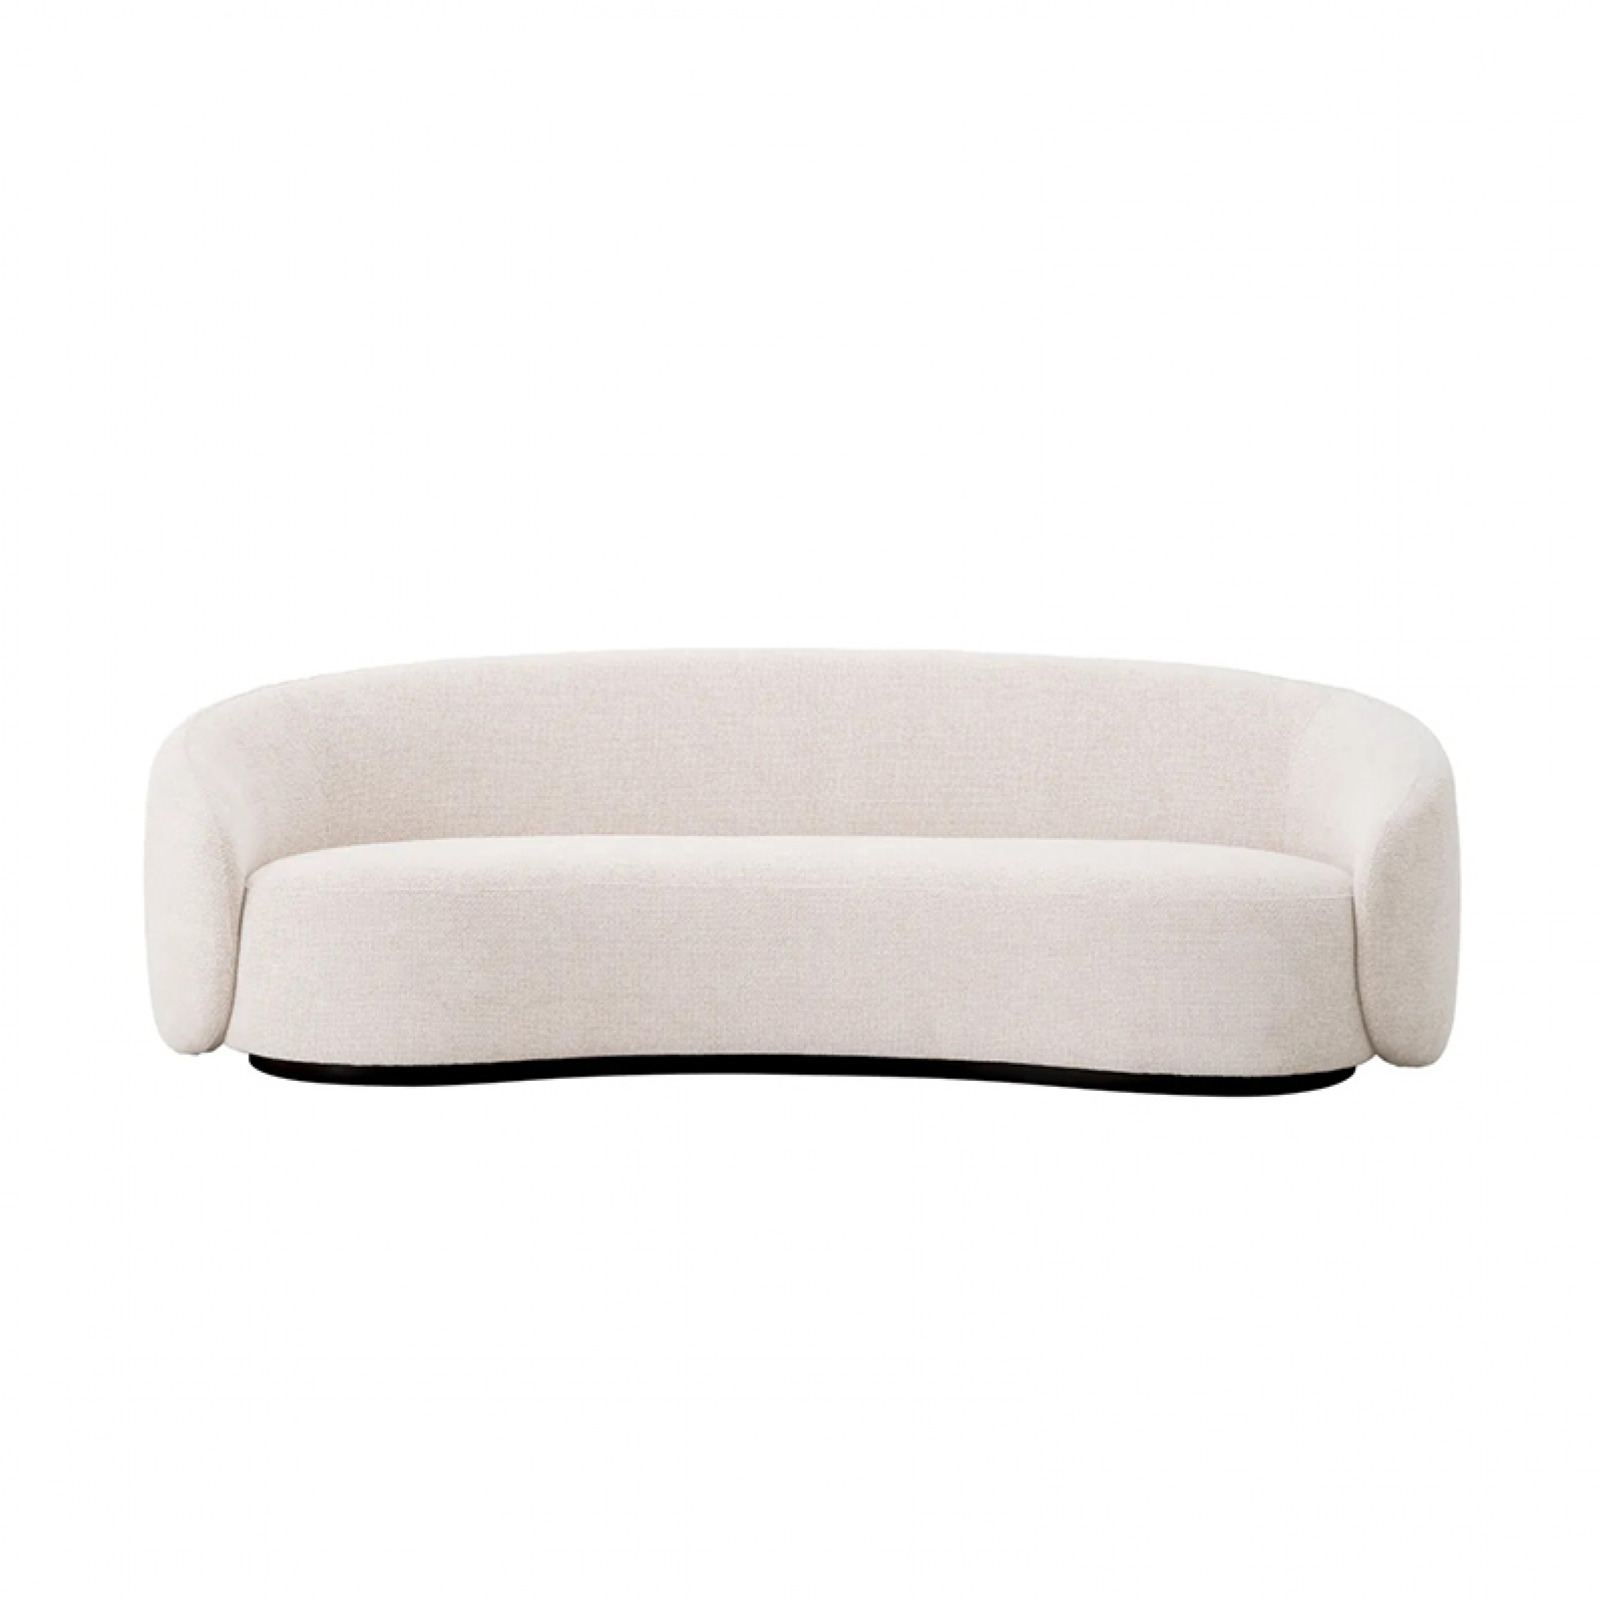 AMore Blanco sofa